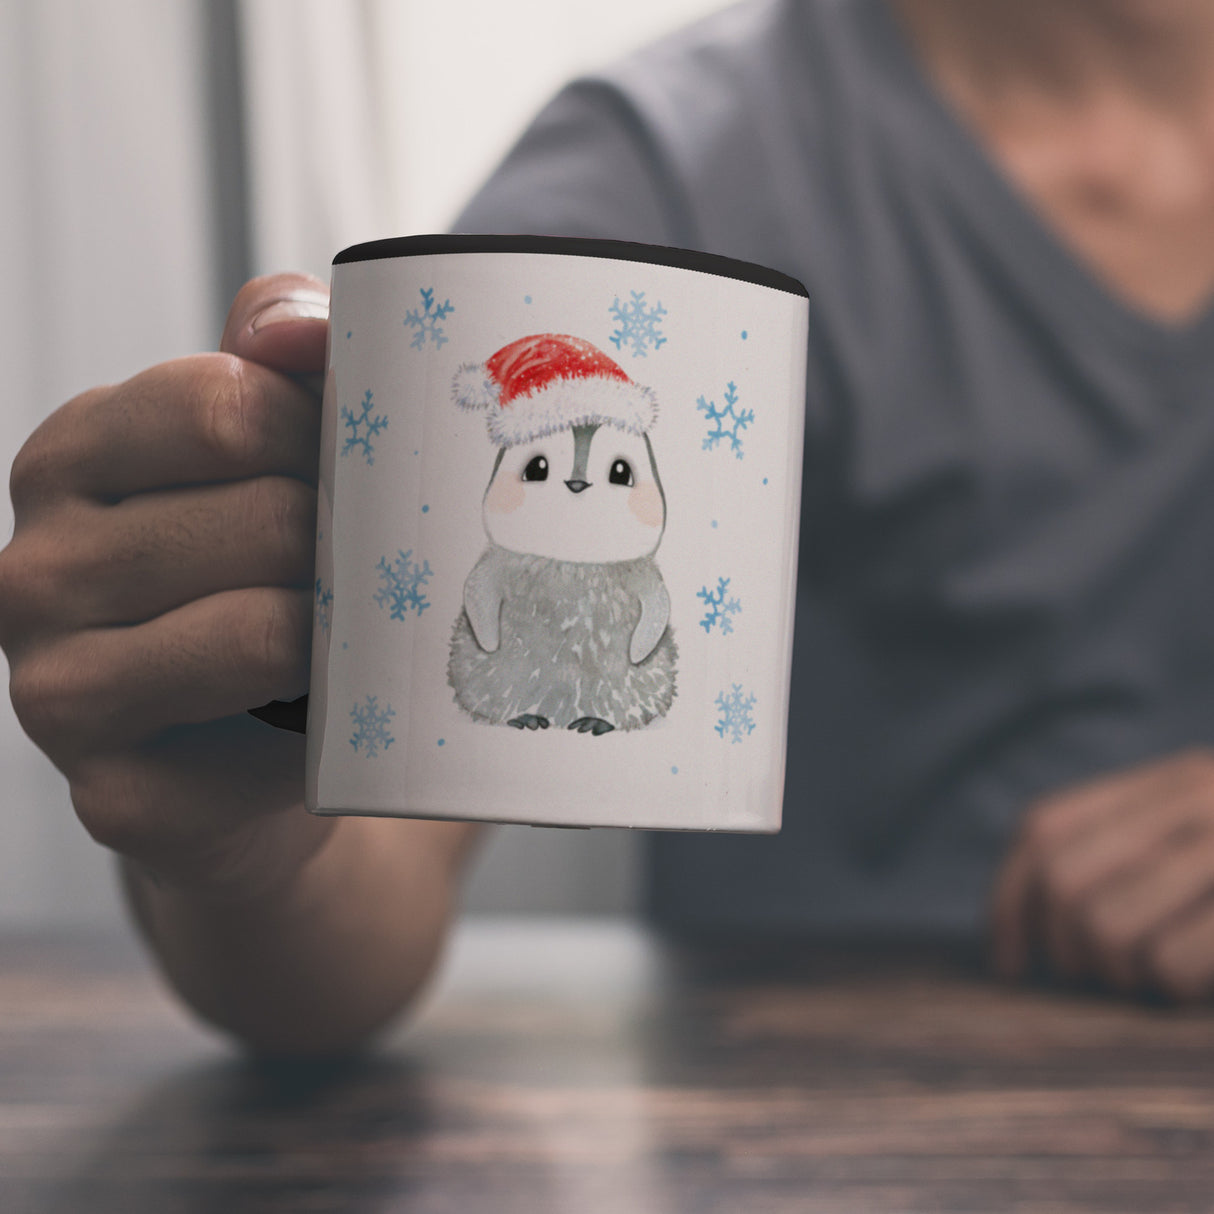 Pinguin mit Weihnachtsmütze Kaffeebecher